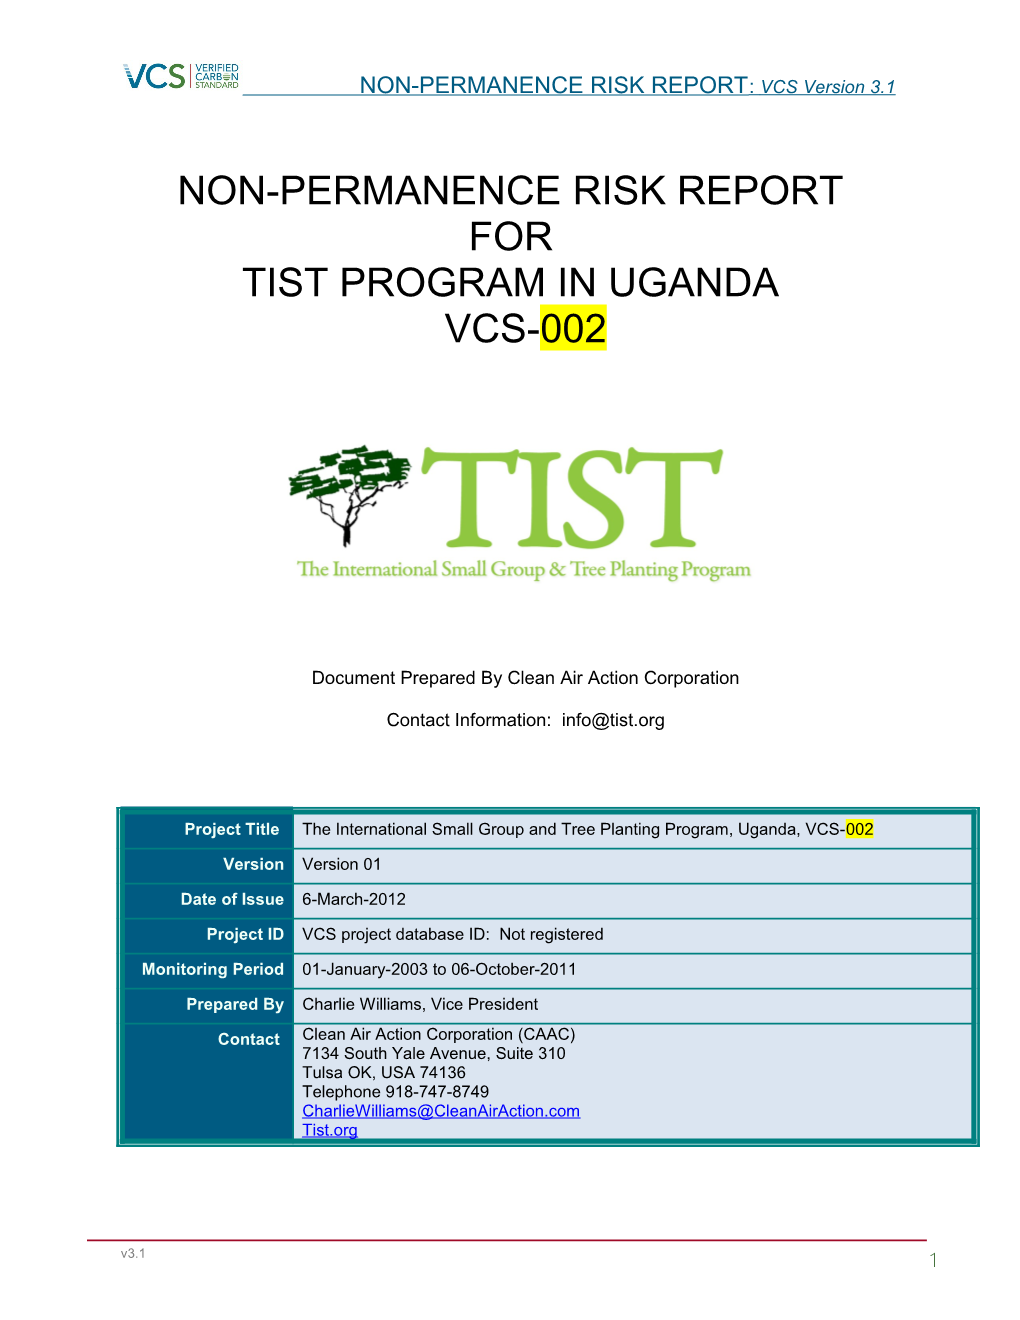 VCS Non-Permanence Risk Report Template